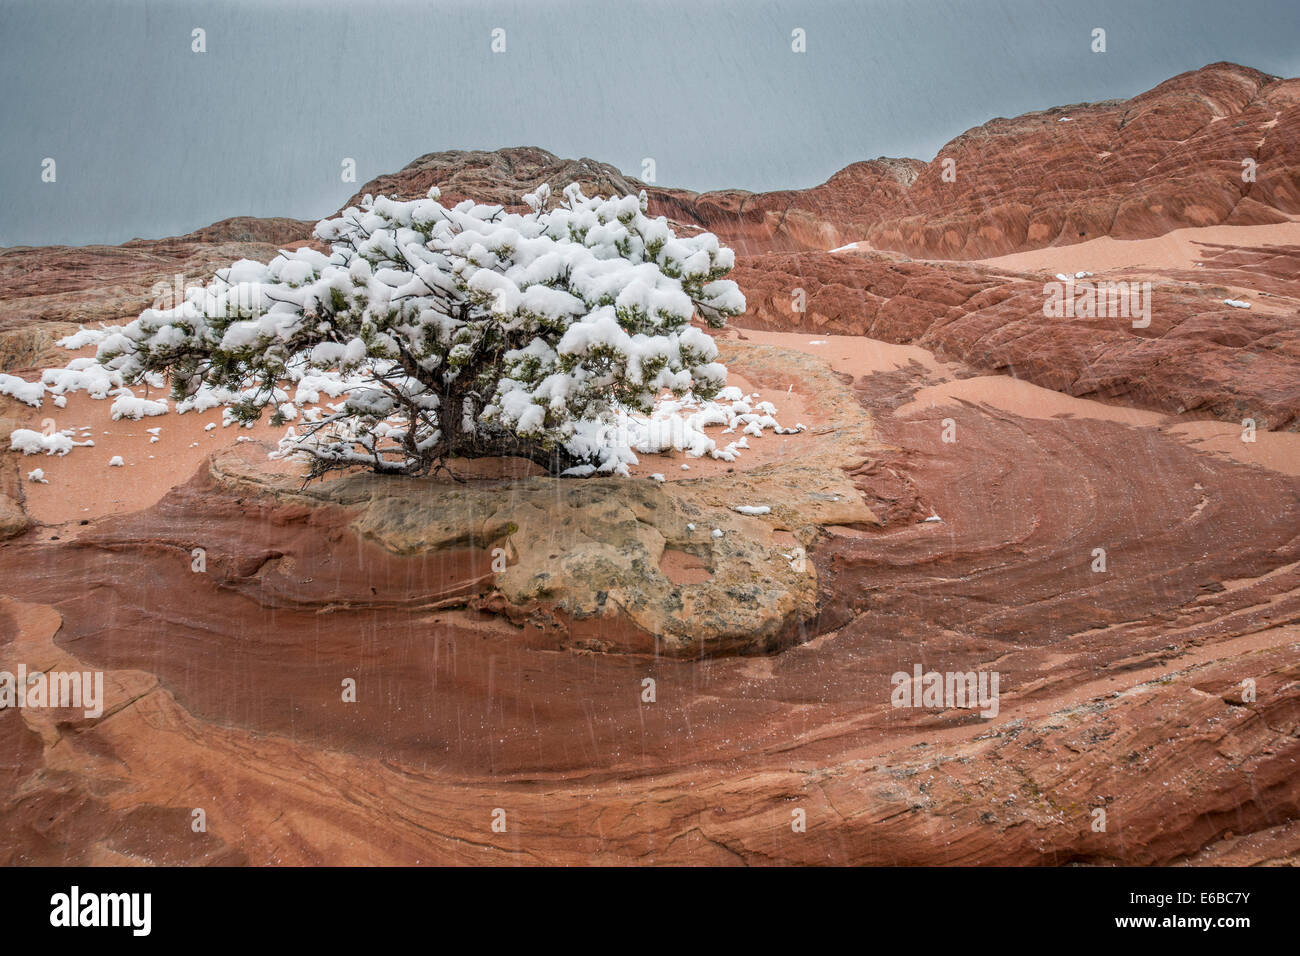 April snow storm and Pinyon pine, White Pocket, Vermillion Cliffs National Monument, Paria Plateau, Arizona, USA Stock Photo